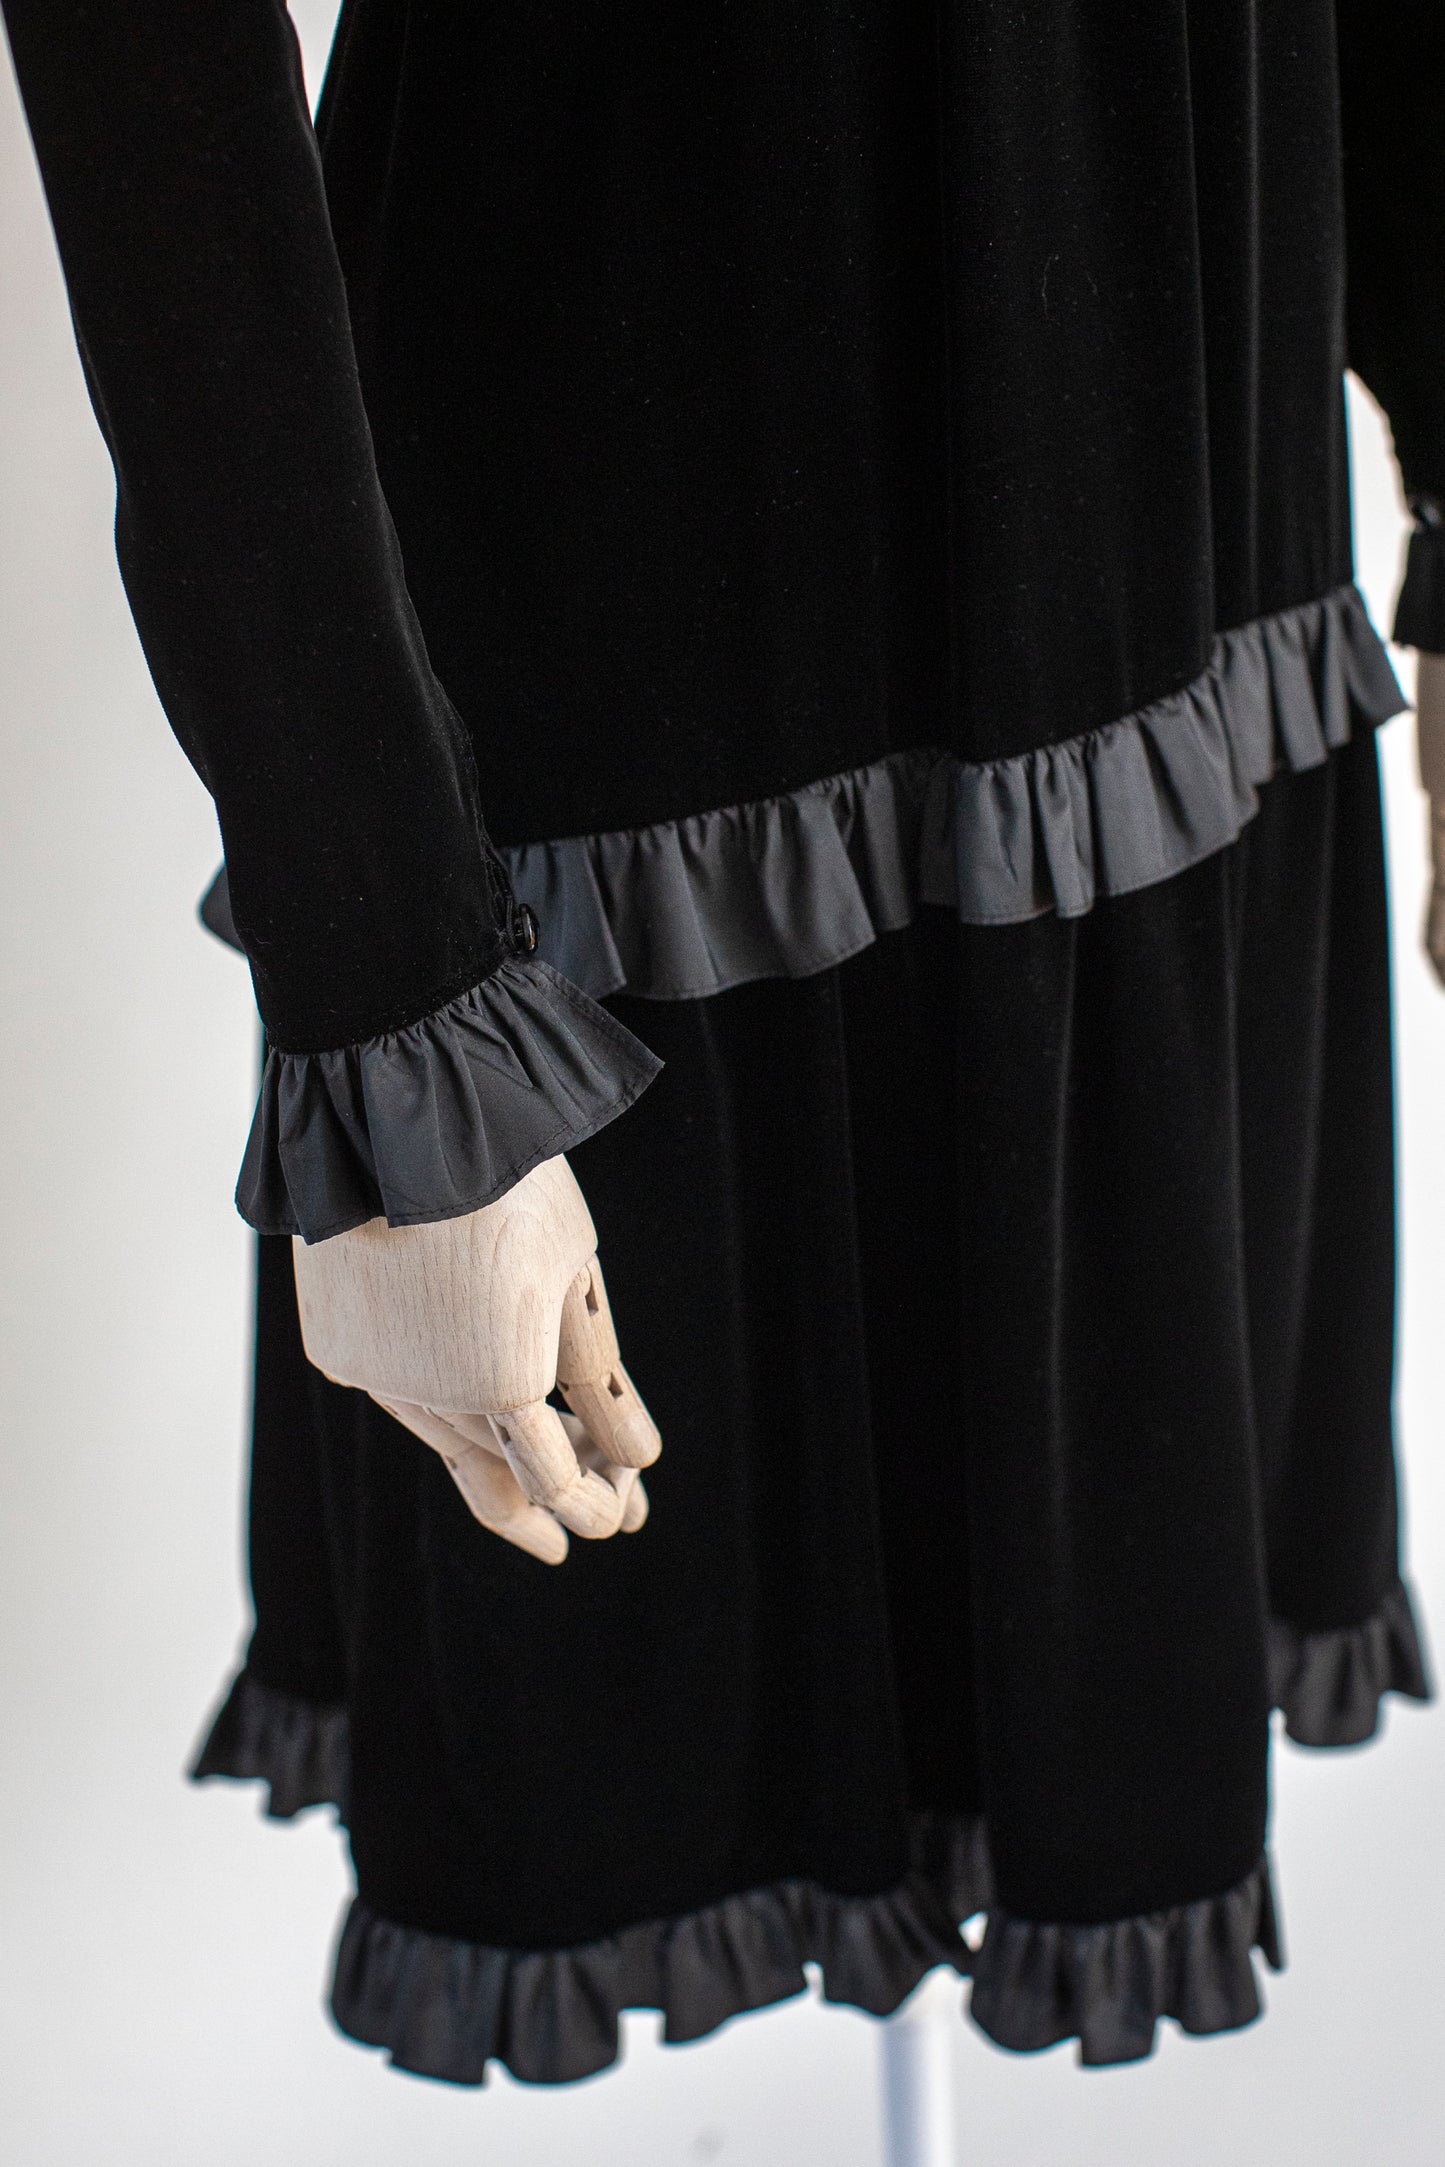 1970s Vintage Black Velvet Evening Dress by Yves Saint Laurent Rive Gauche Size S-M